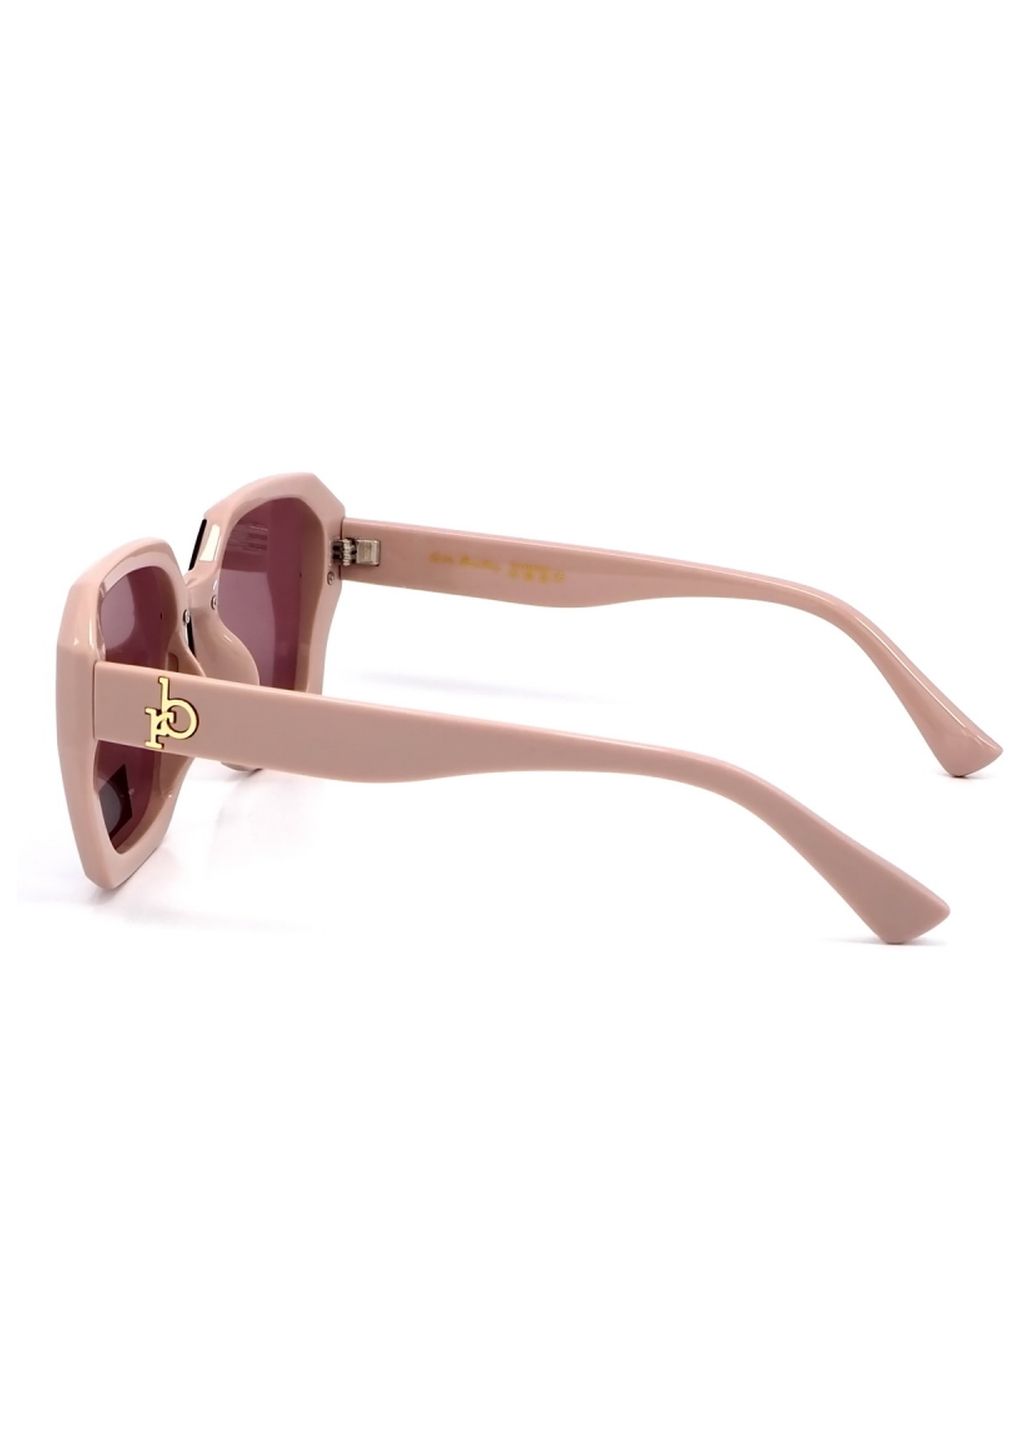 Купить Женские солнцезащитные очки Rita Bradley с поляризацией RB721 112030 в интернет-магазине